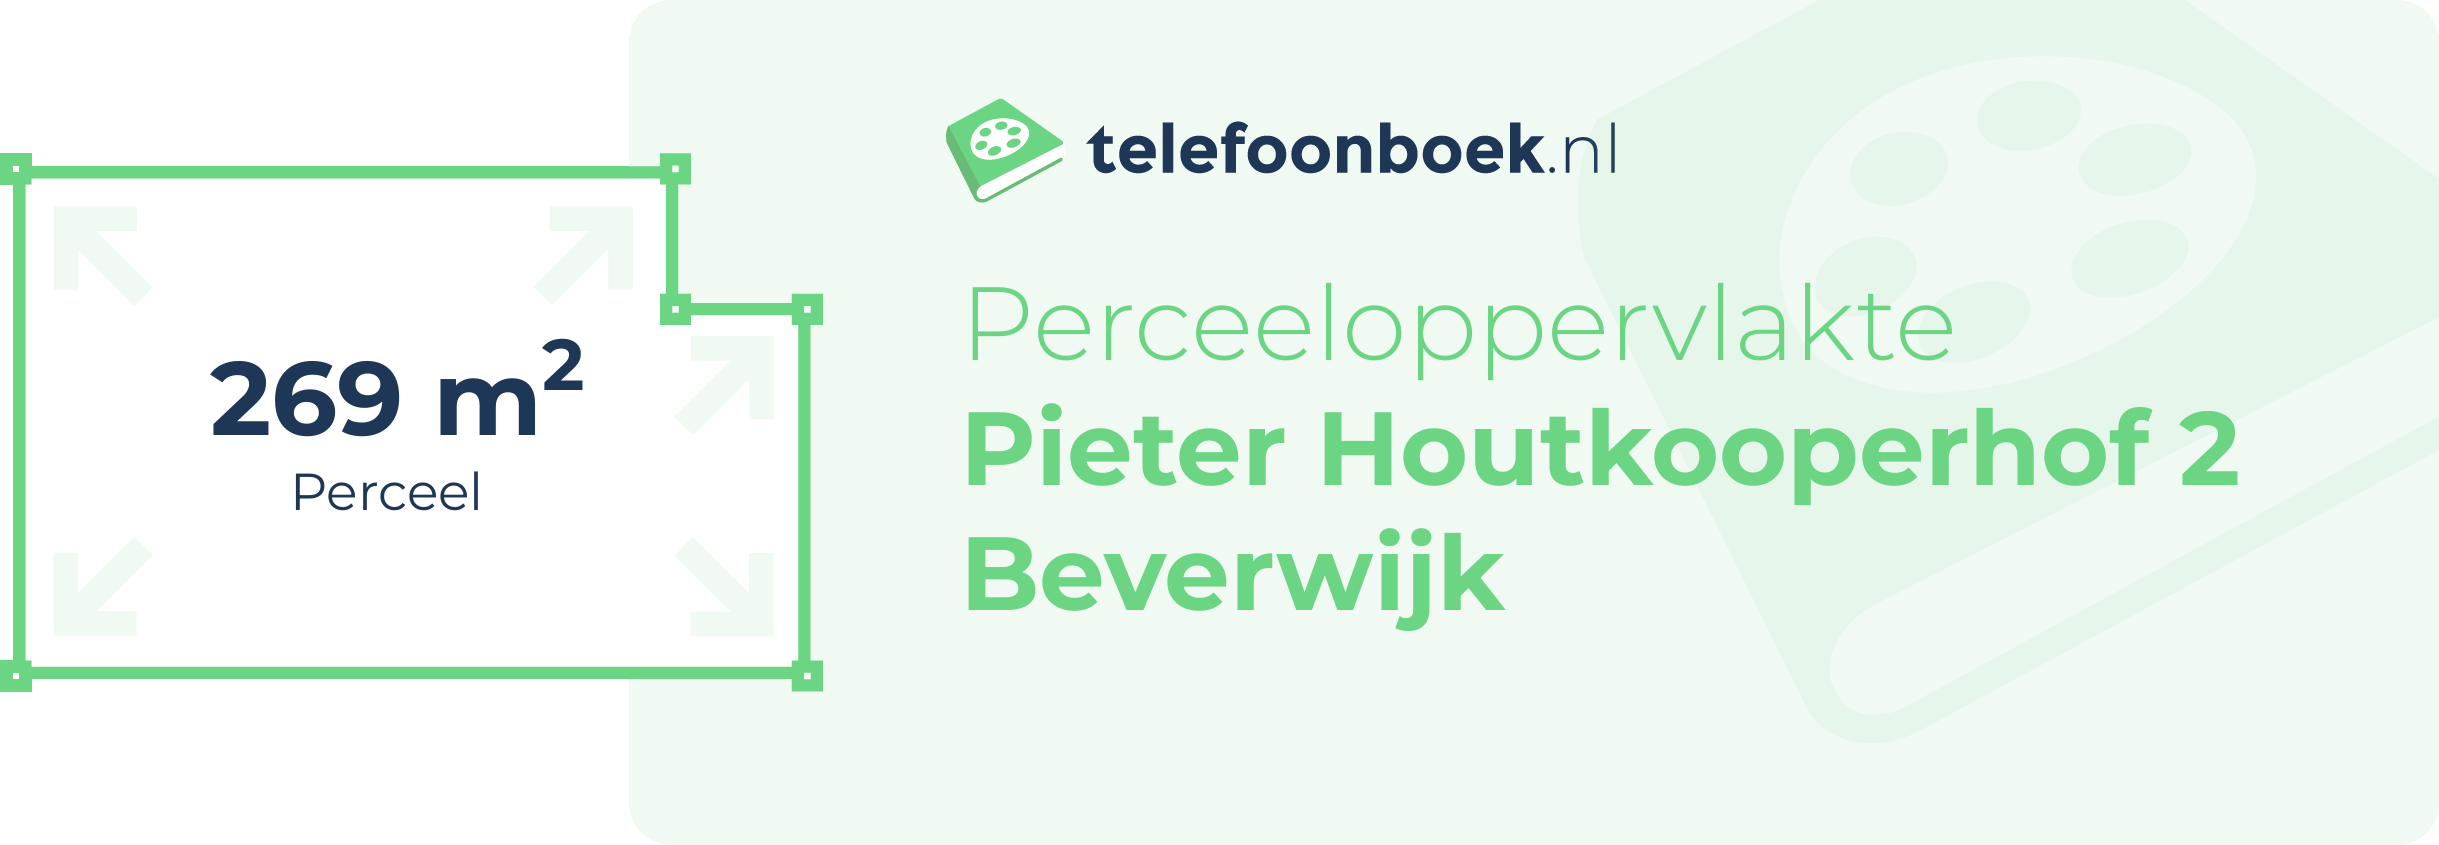 Perceeloppervlakte Pieter Houtkooperhof 2 Beverwijk